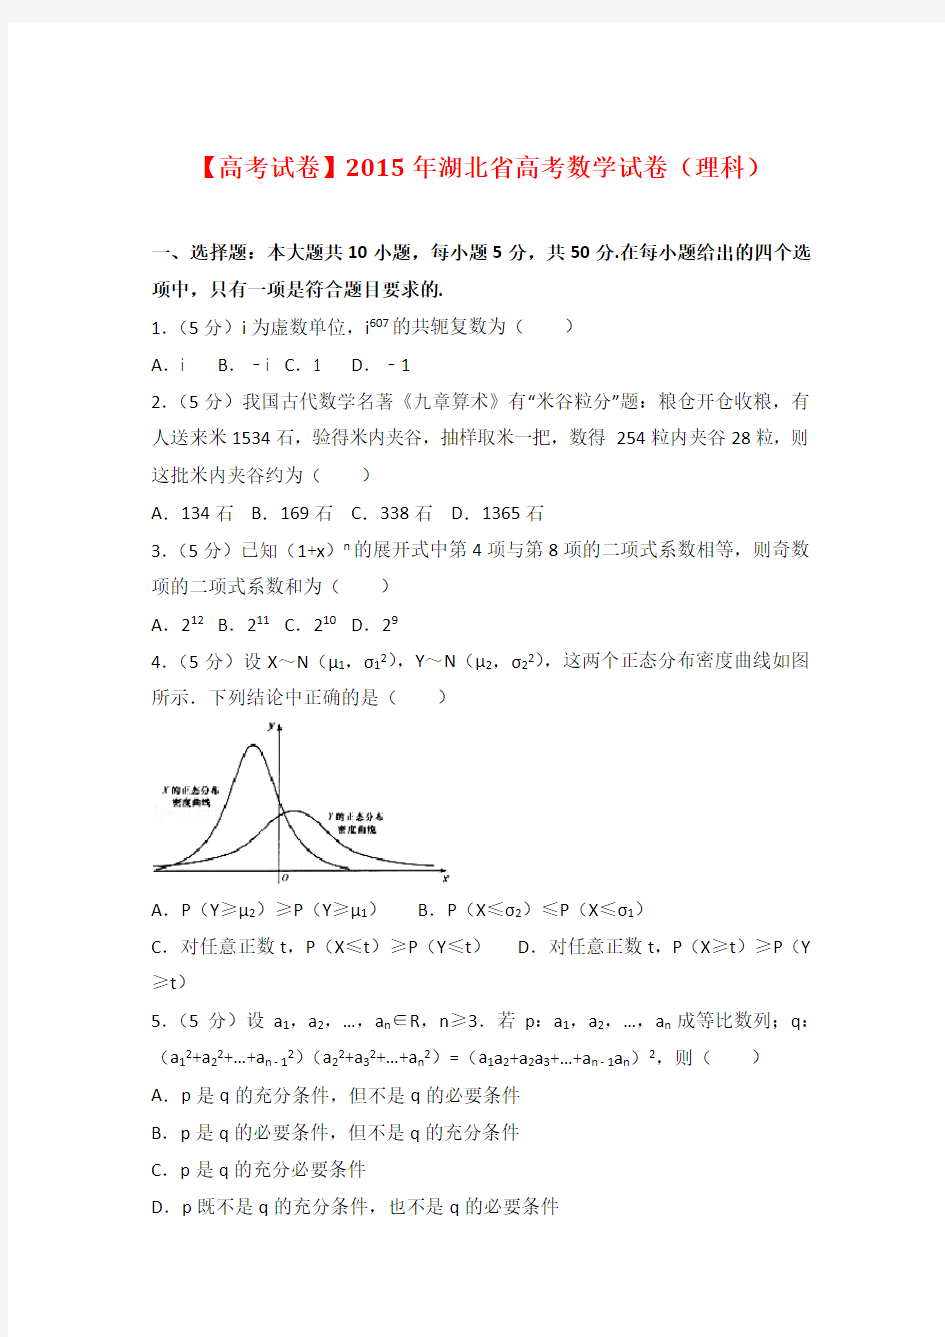 【高考试卷】2015年湖北省高考数学试卷(理科)及答案